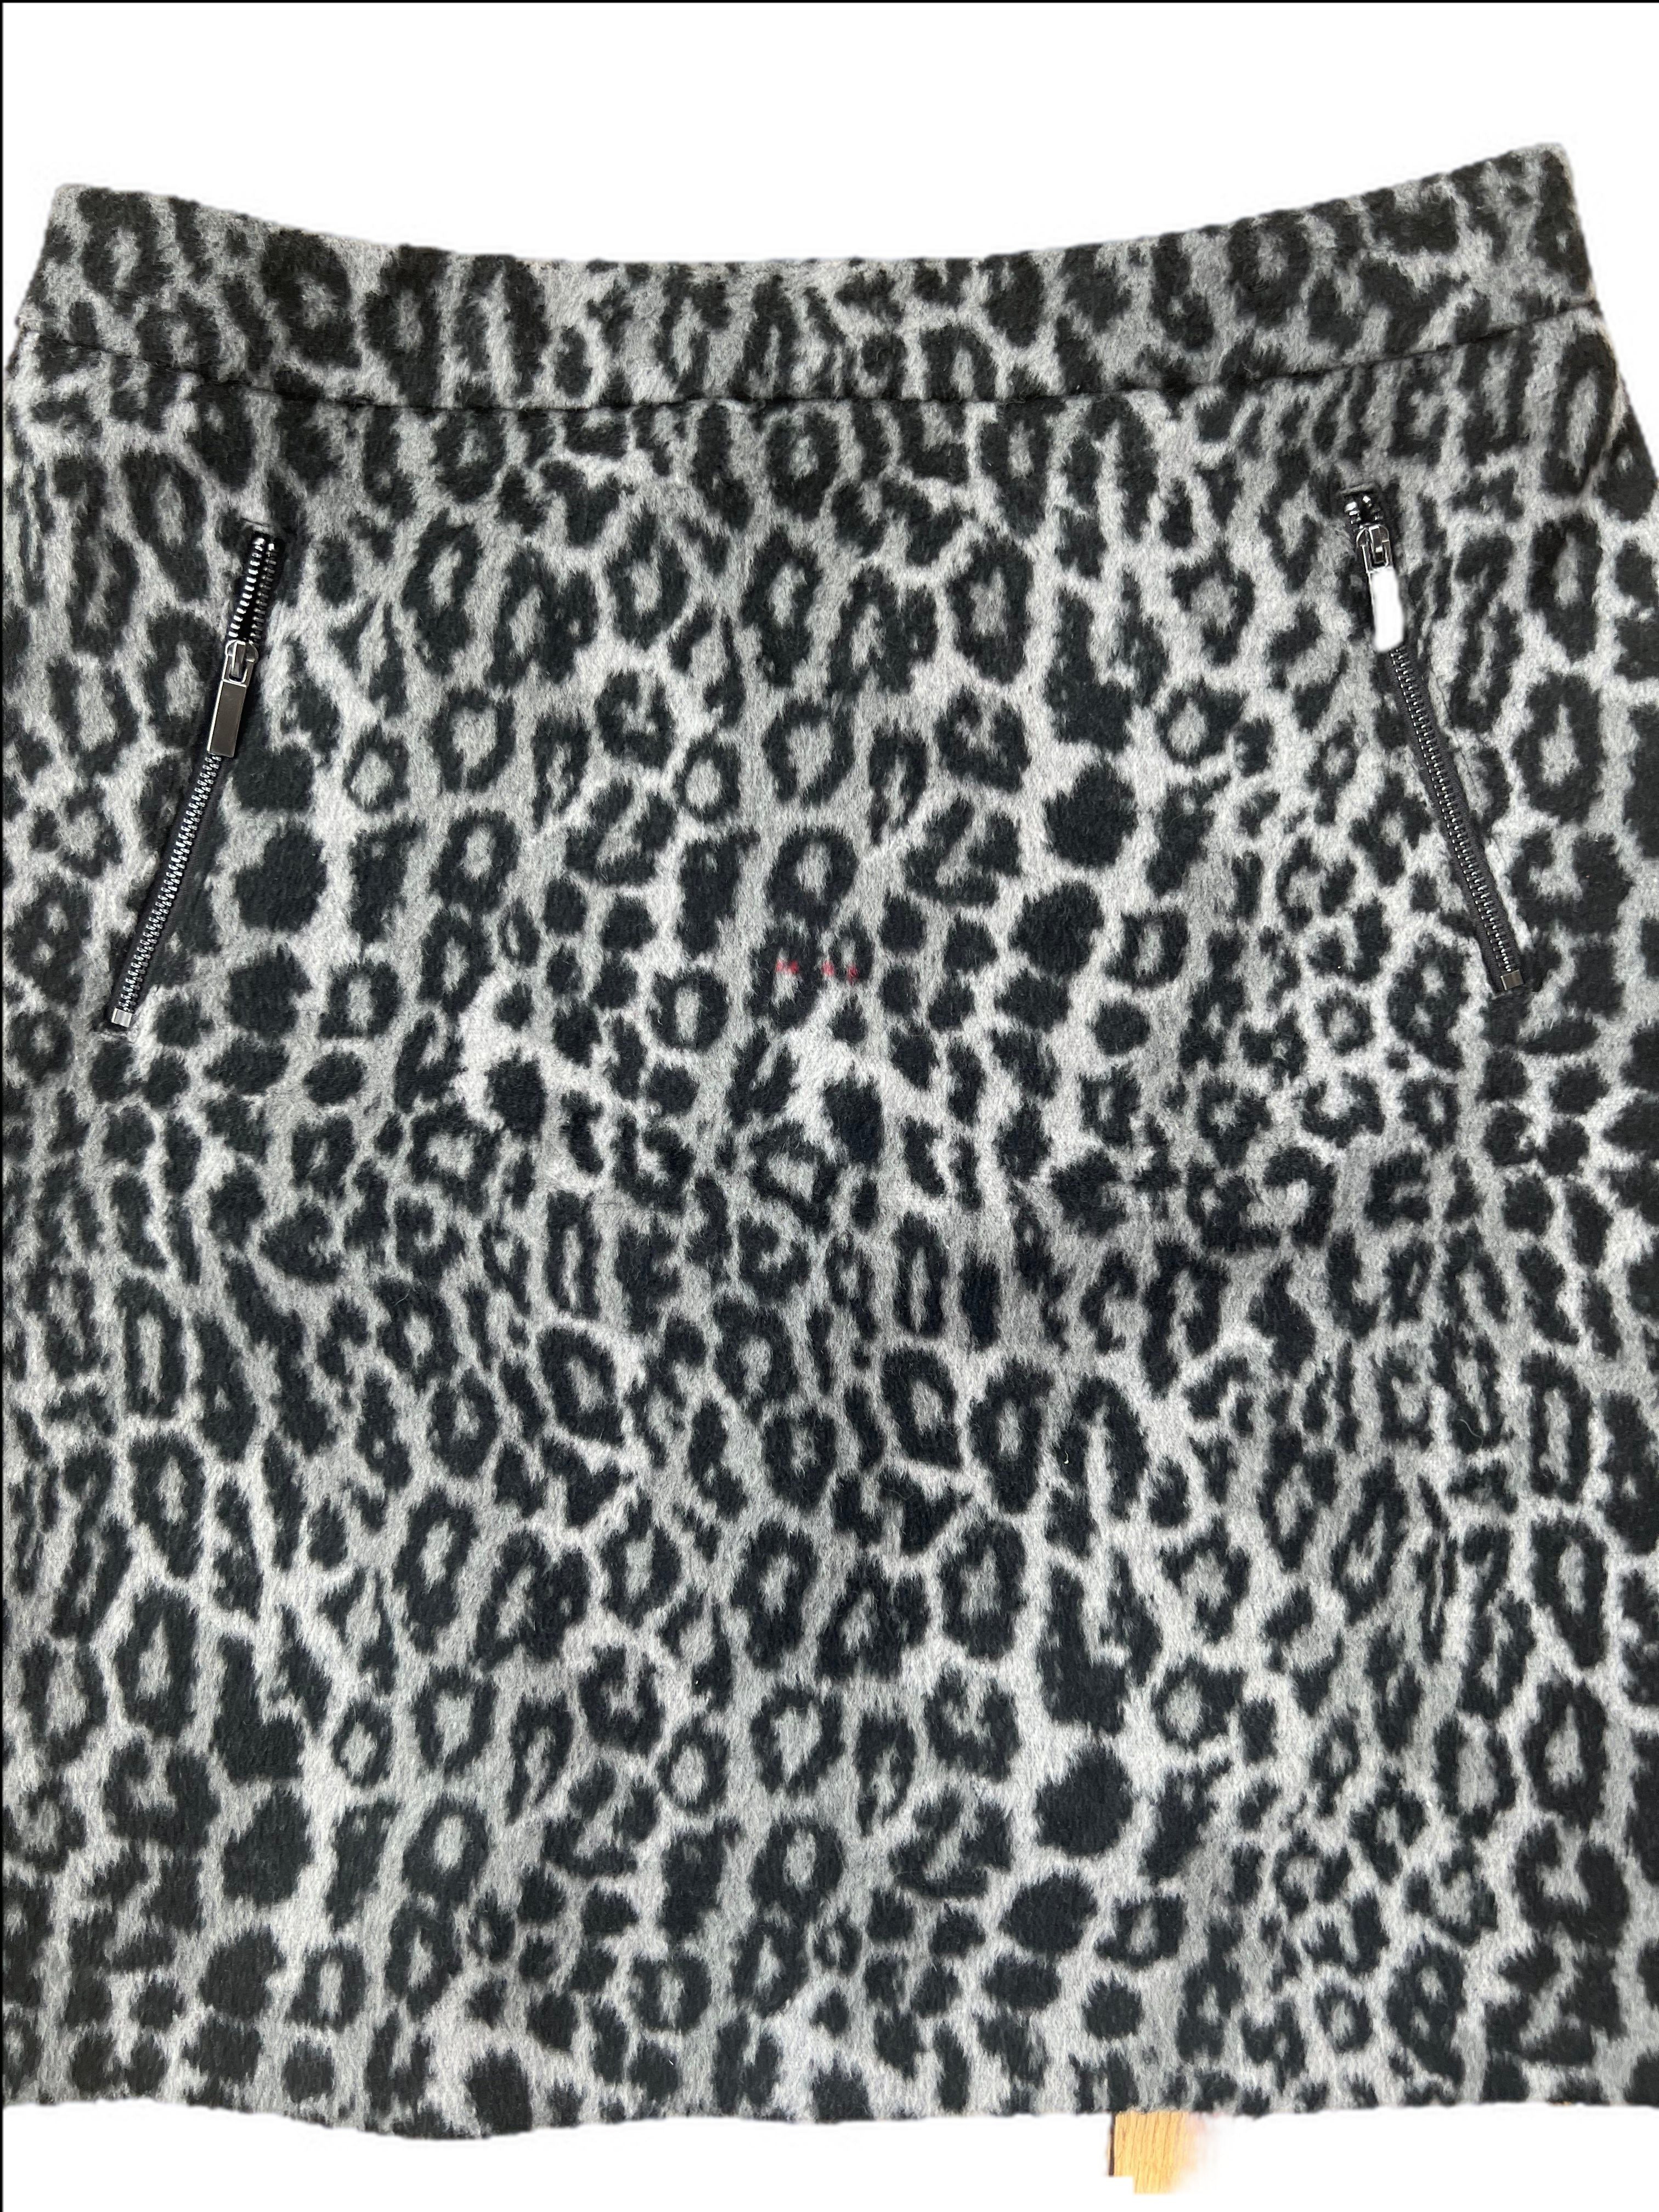 Faux Fur Leopard Print Skirt Small marks